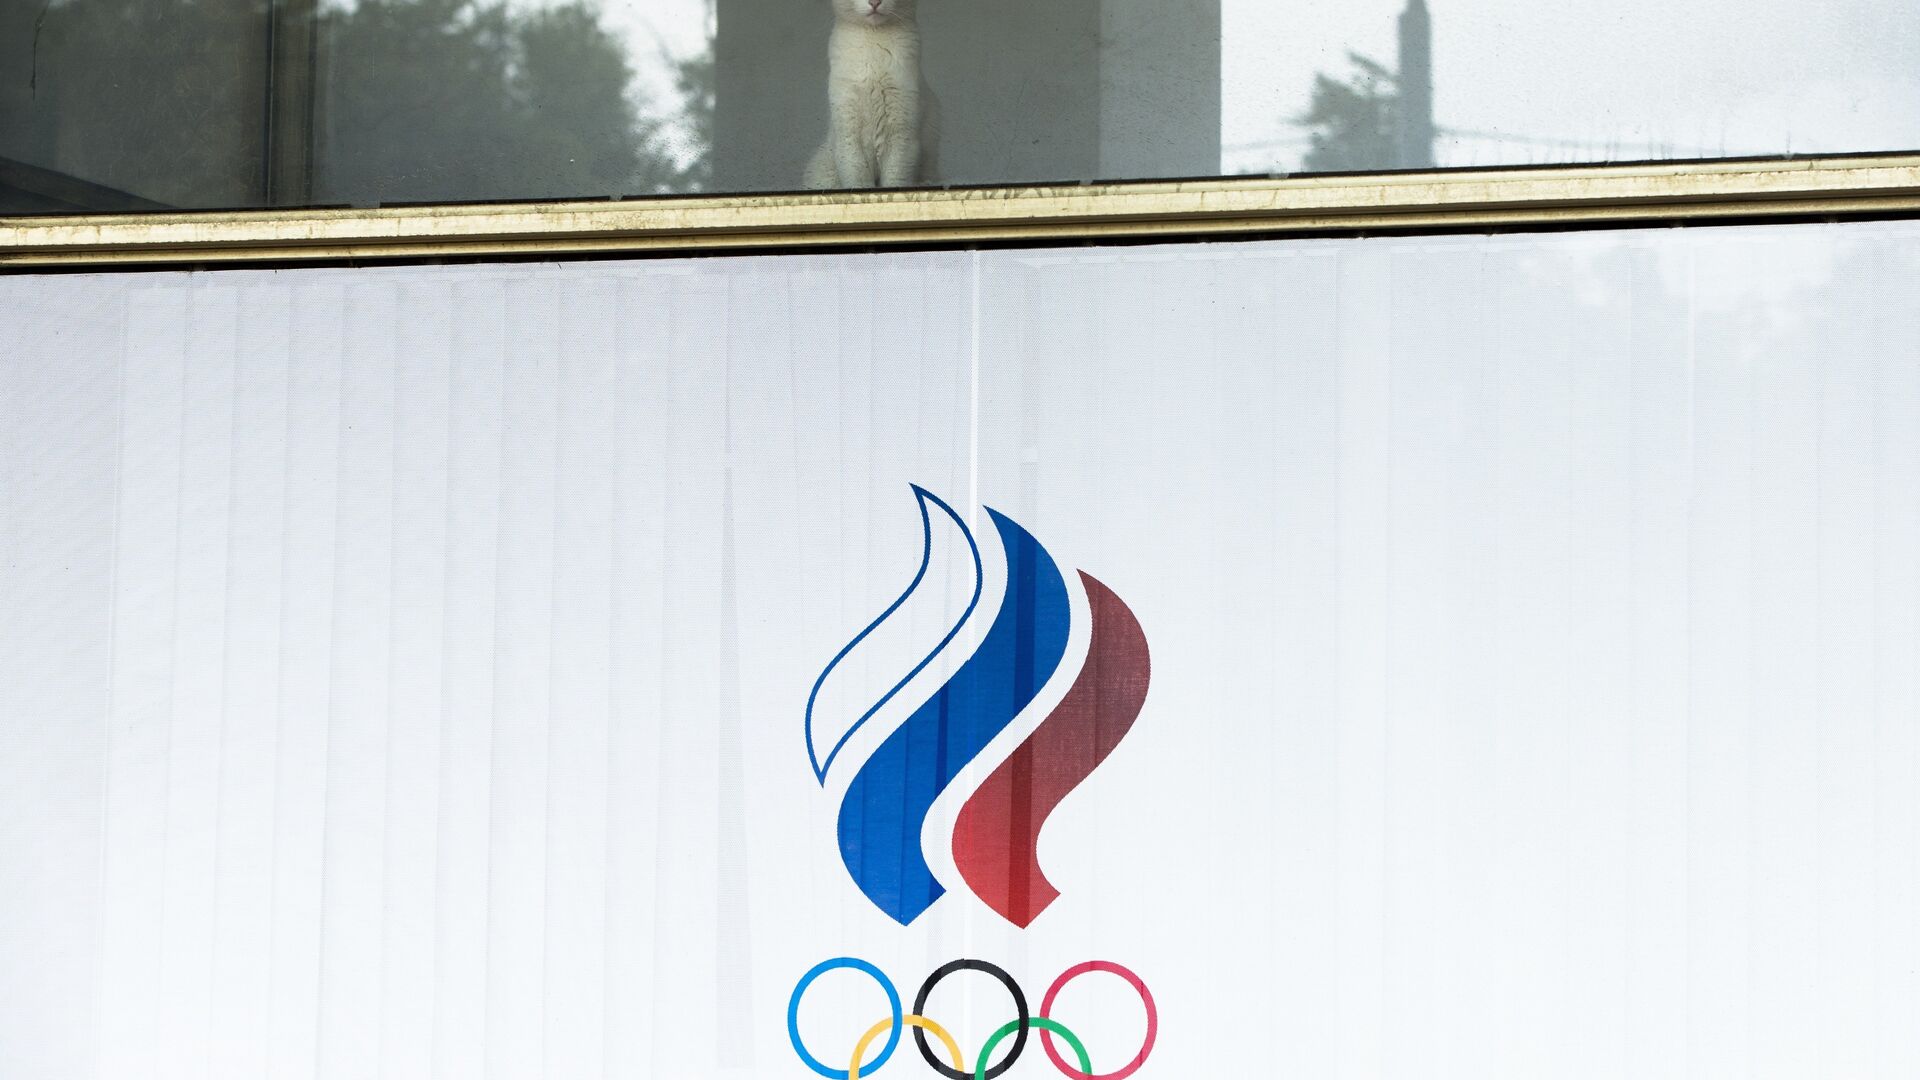 Мачка гледа кроз прозор зграде Руског олимпијског комитета. - Sputnik Србија, 1920, 17.07.2021